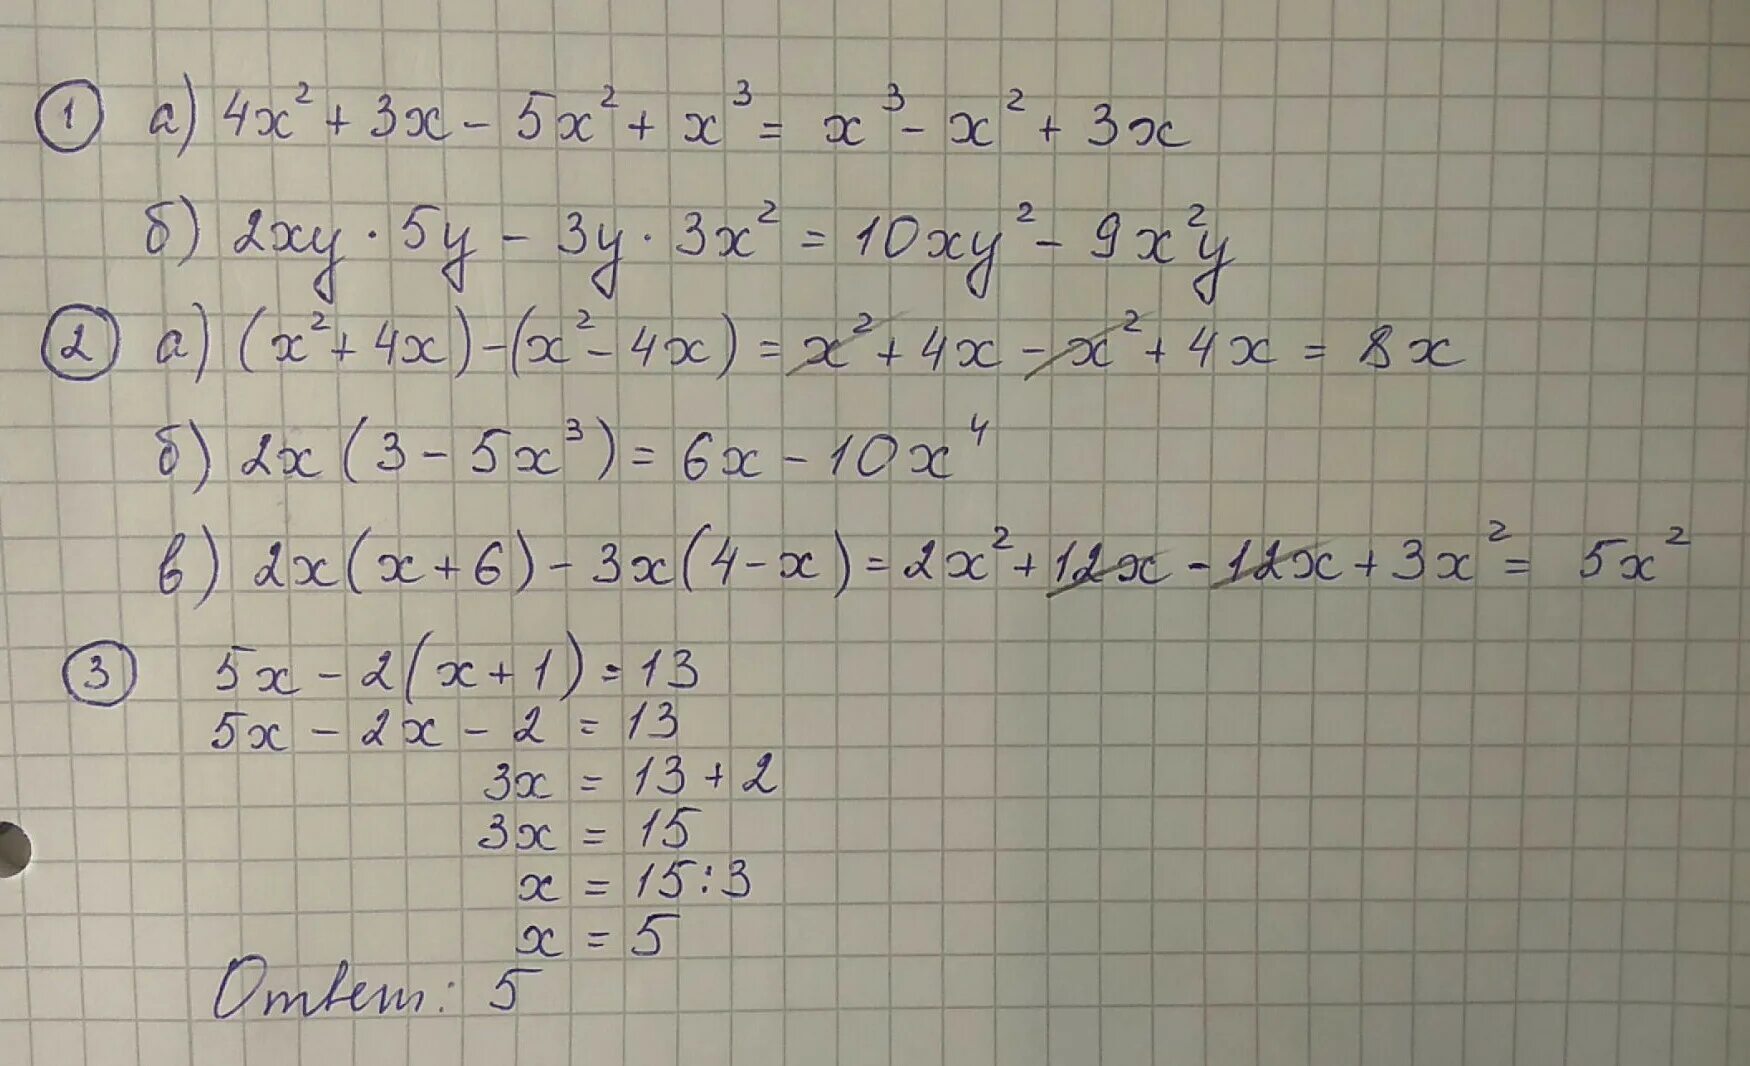 3х 4у 2 5. (5х2 – 3ху -у2) - (*) = х2 + 3ху. Х+2у=5 ху=2. 2ху*5у-3у*3х2. -1.2Ху2 * 6х3у5 с пояснениями.